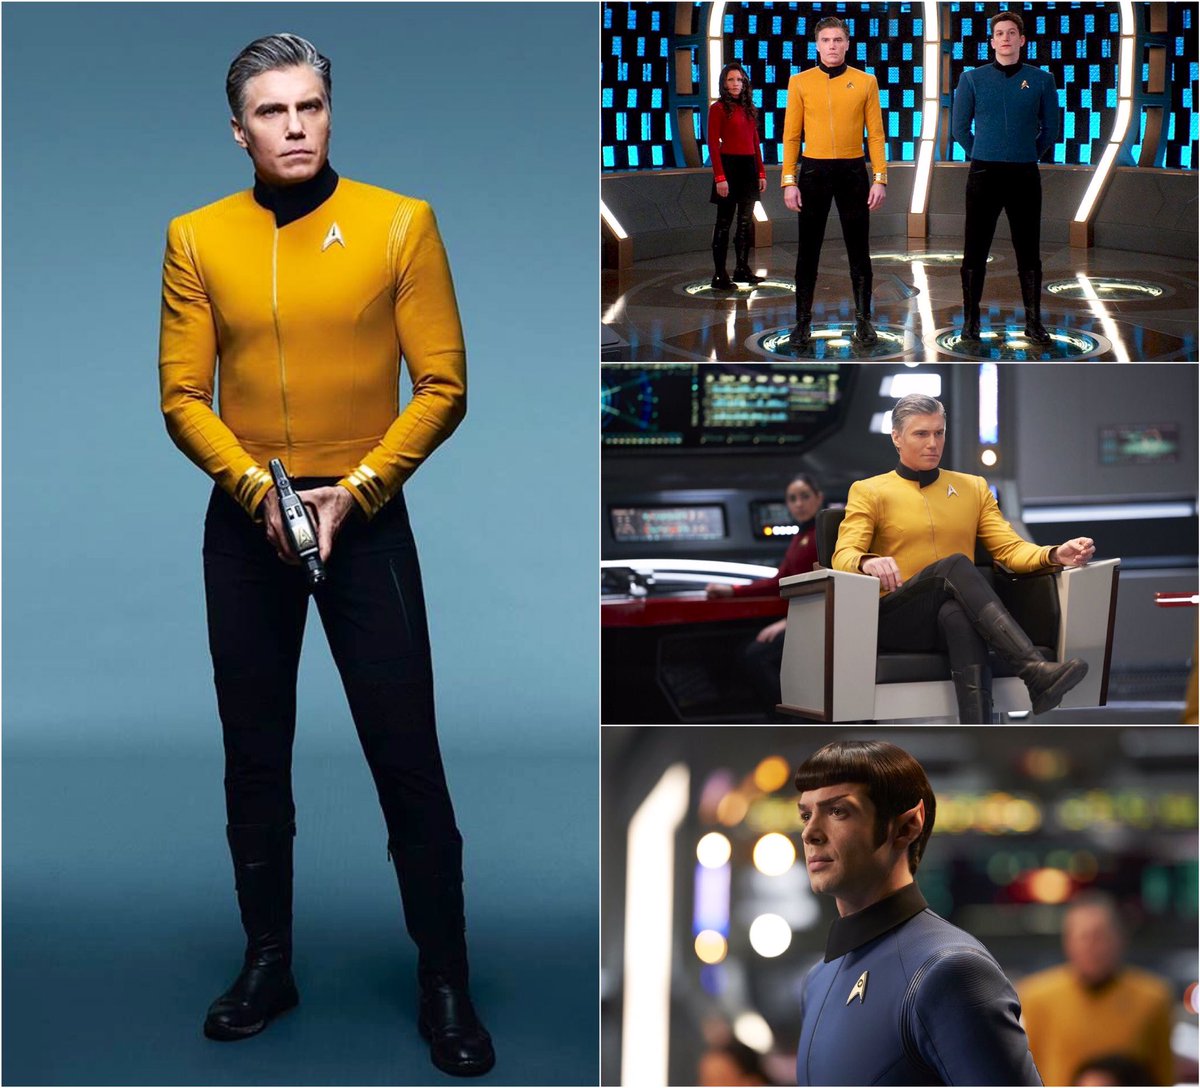 Terunzo テルンゾ A Twitter 半世紀ぶりに生まれ変わった新ユニも良かった Startrekdiscovery Startrek Uniform Captainpike Spock スタートレックディスカバリー スタートレック ユニホーム 宇宙艦隊 アンソンマウント Ansonmount スポック Ethanpeck